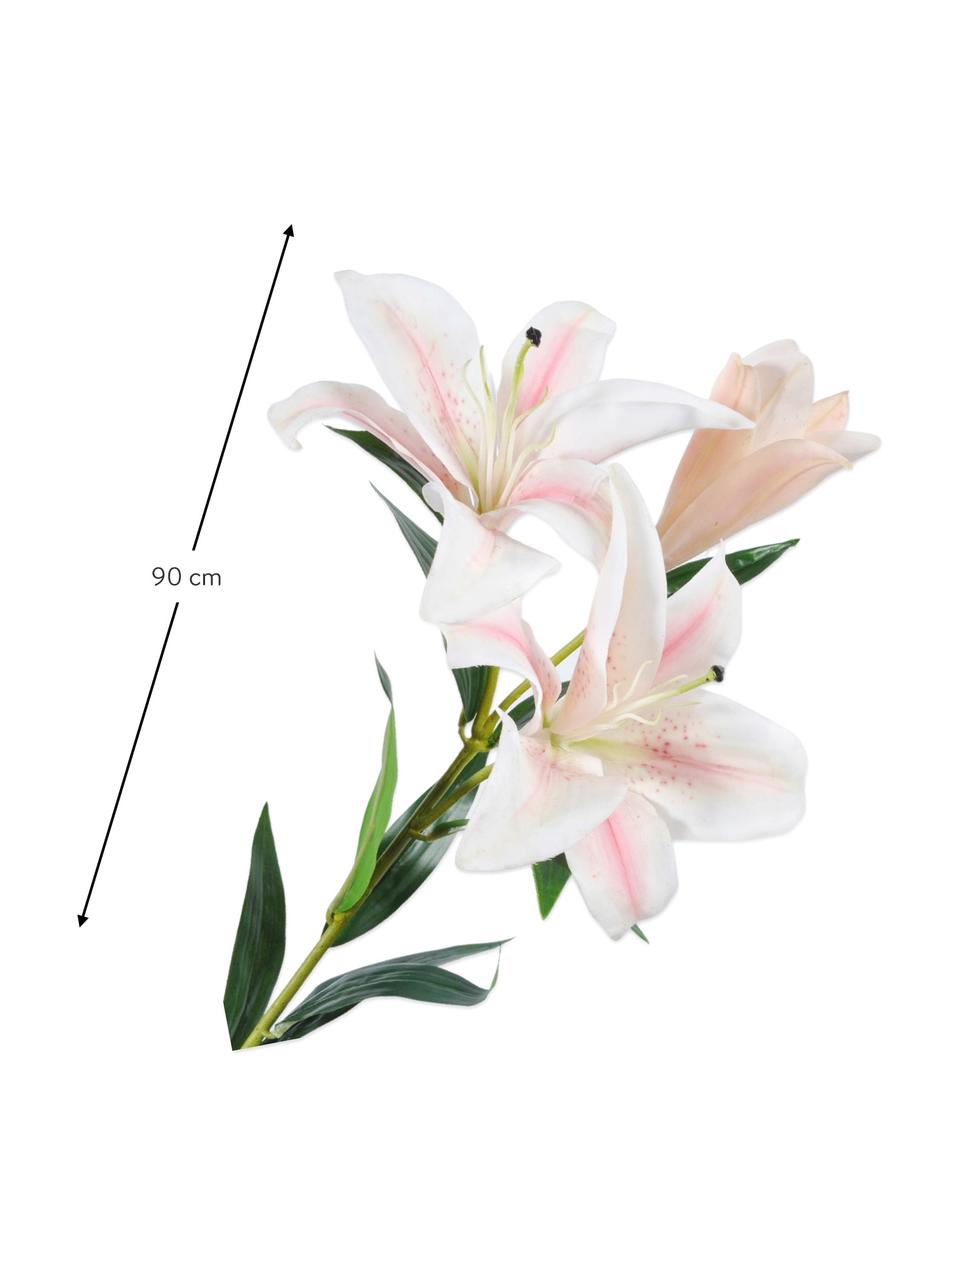 Květinová dekorace lilie, bílo-růžová, Umělá hmota, kovový drát, Bílá, růžová, D 90 cm